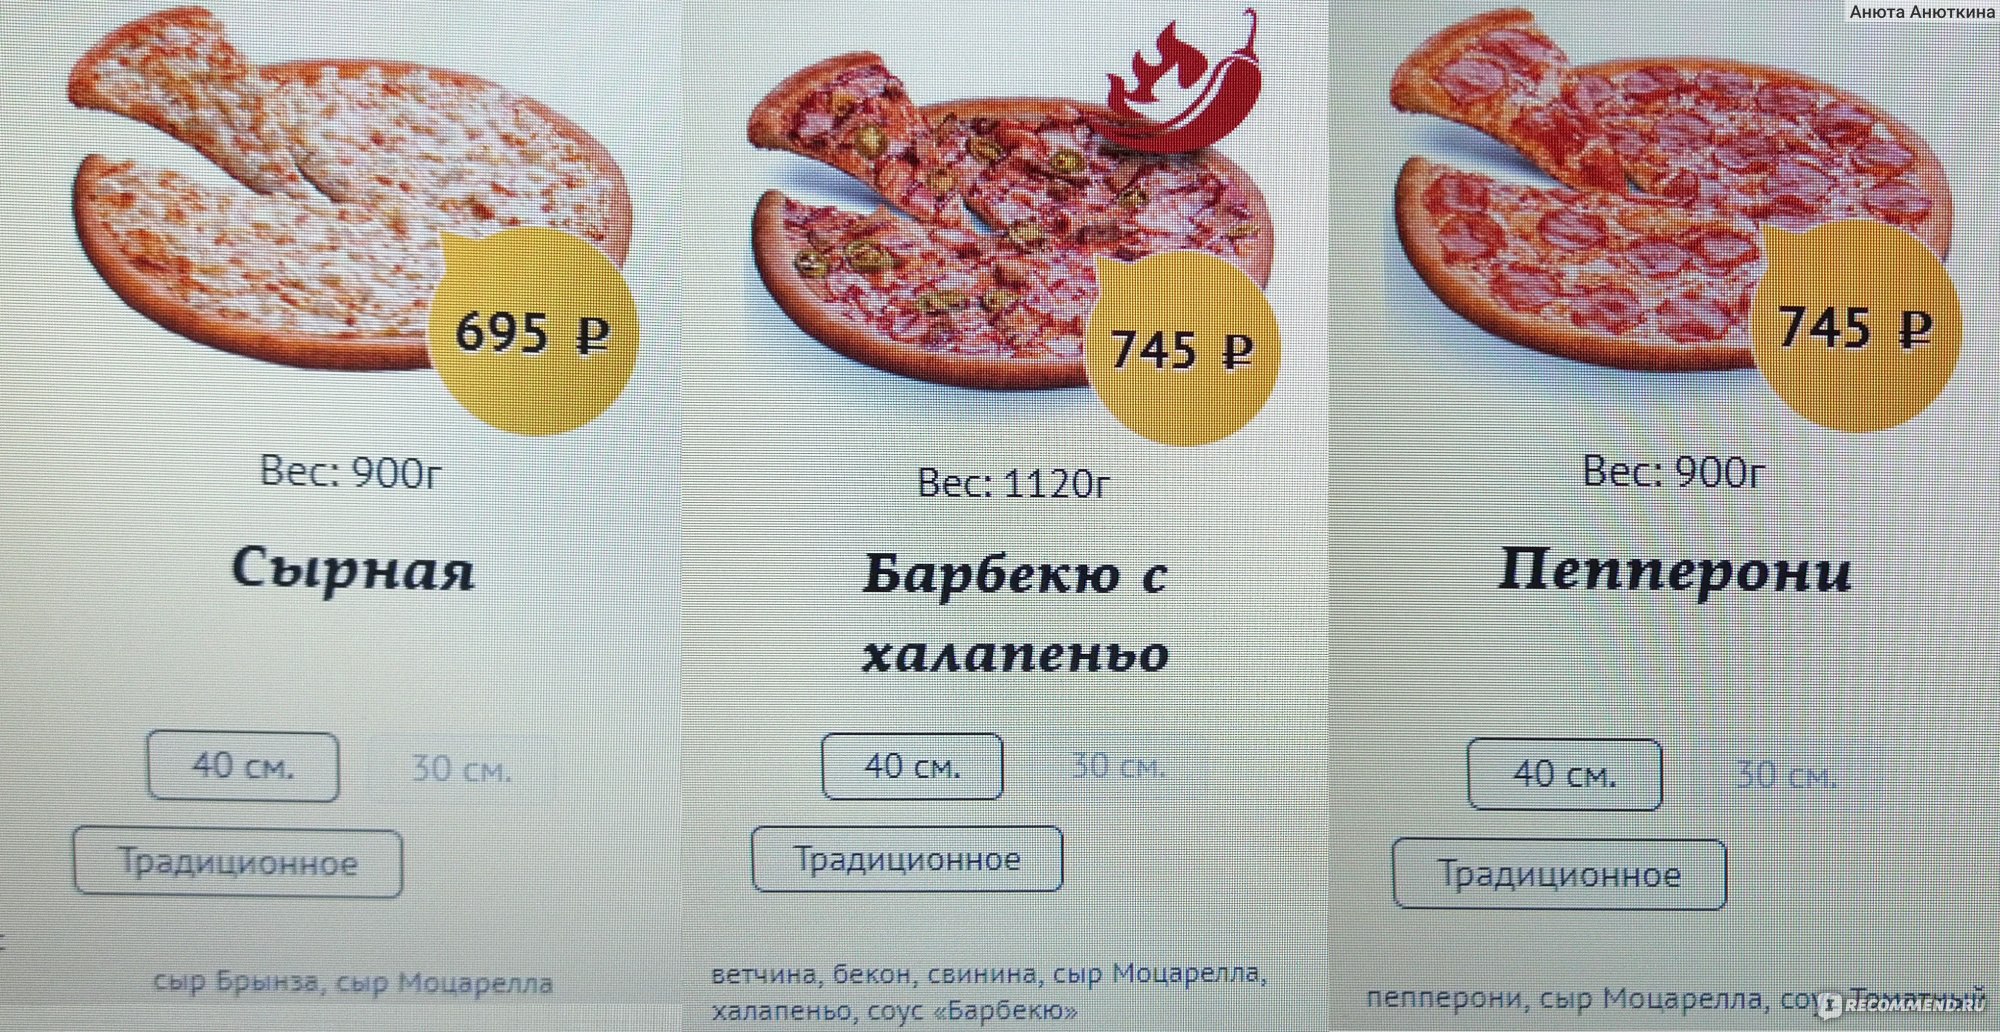 Вес пиццы Ташир 40 см